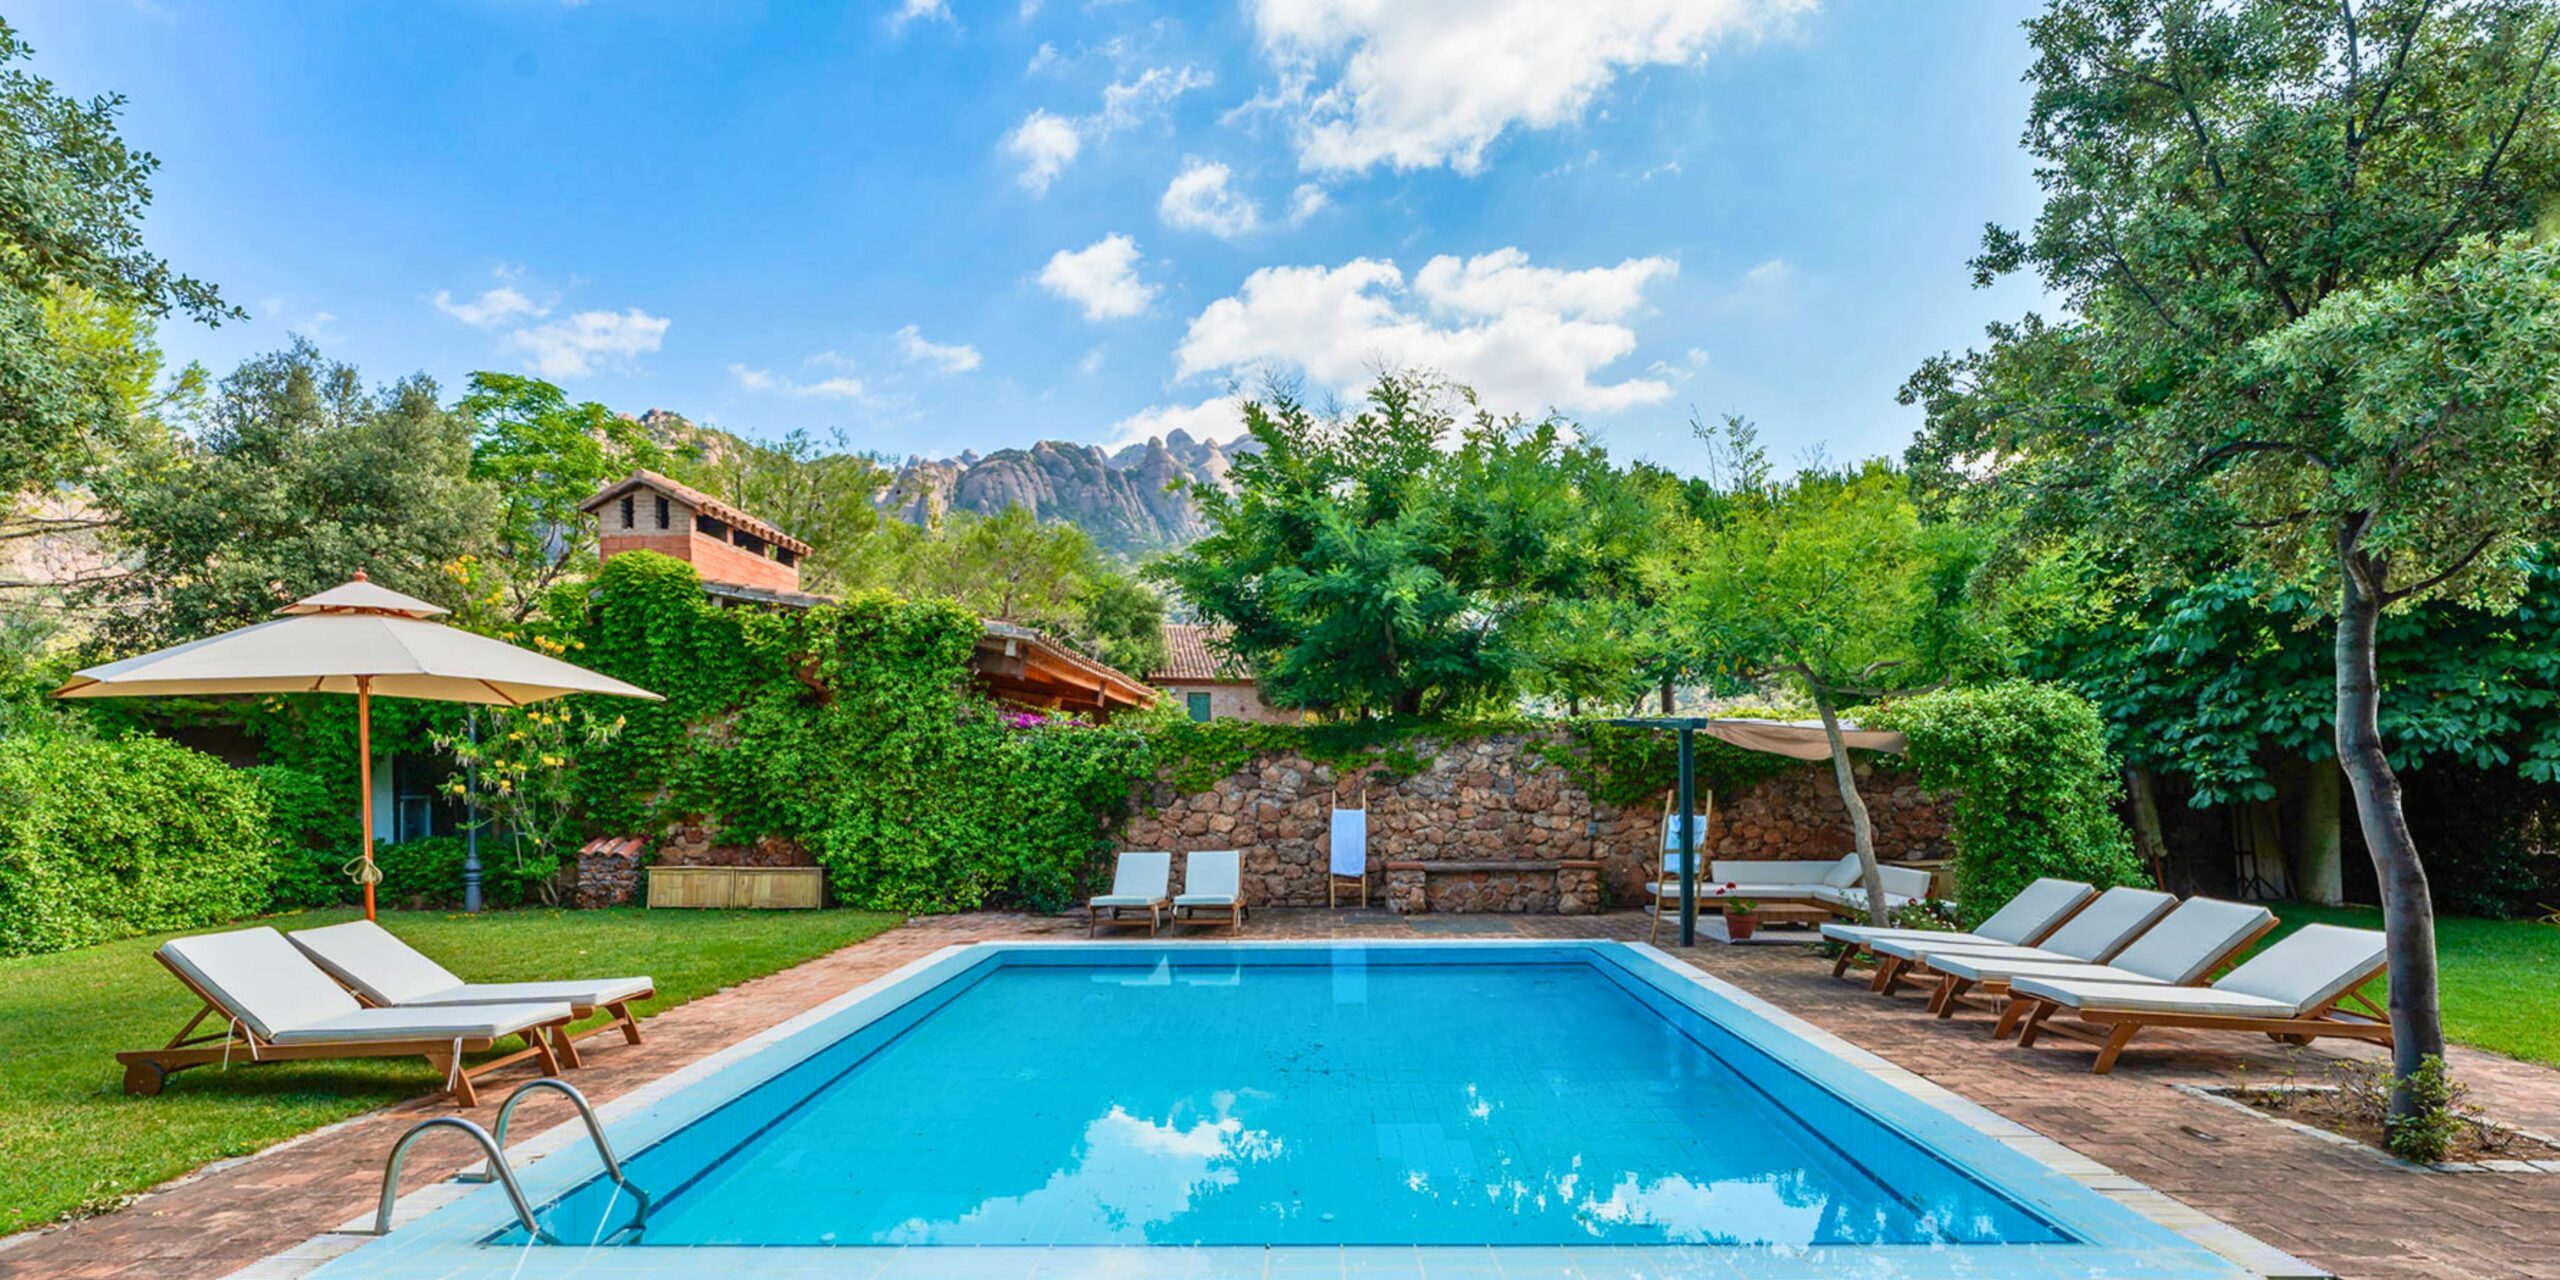 L'une des plus belles villas avec piscine de Barcelone